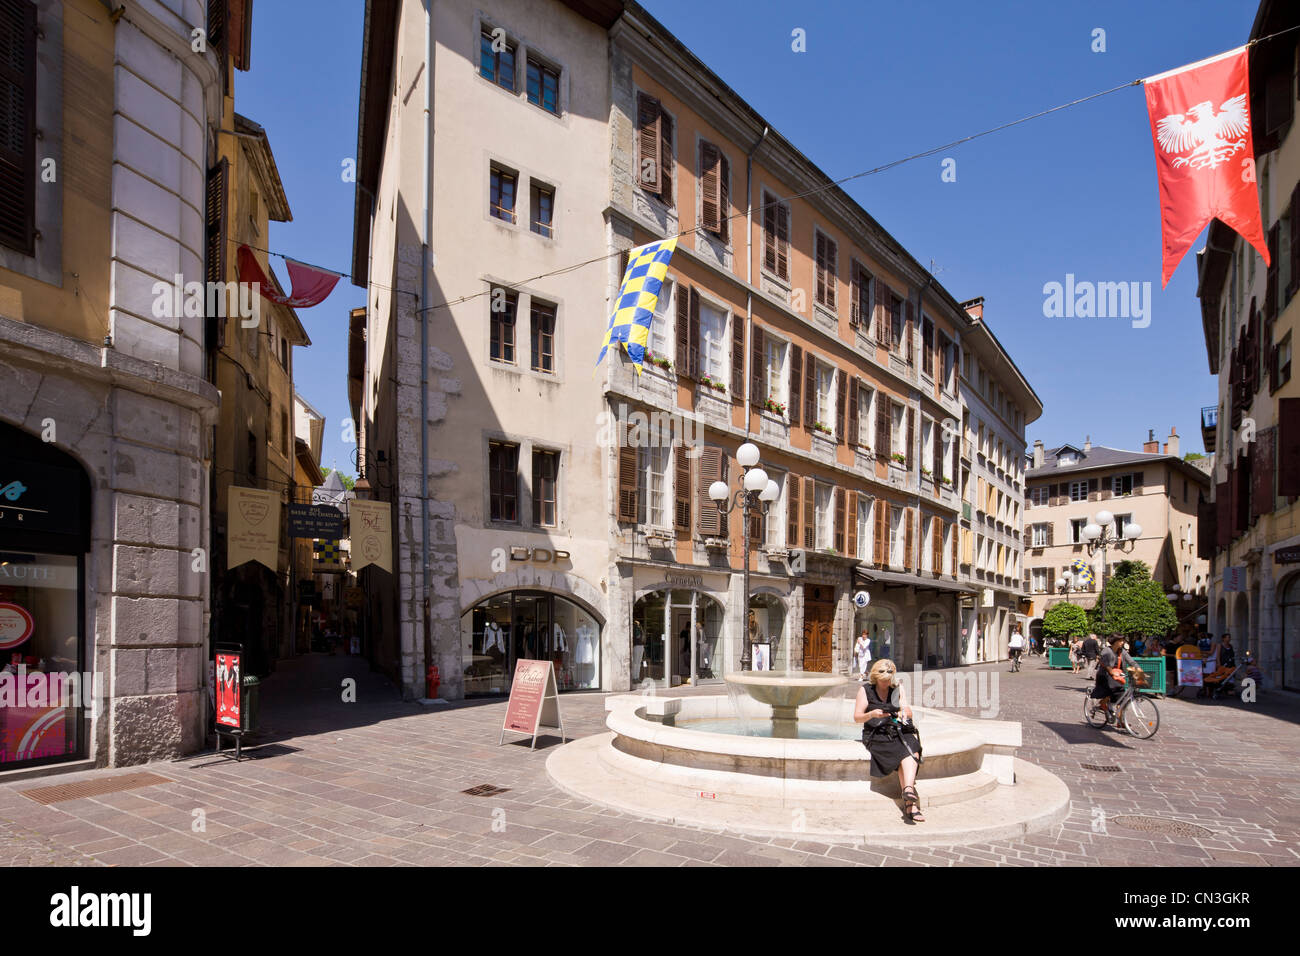 Altstadt, Brunnen im Ort St. Leger, Chambery, Savoie, Frankreich Stockfoto